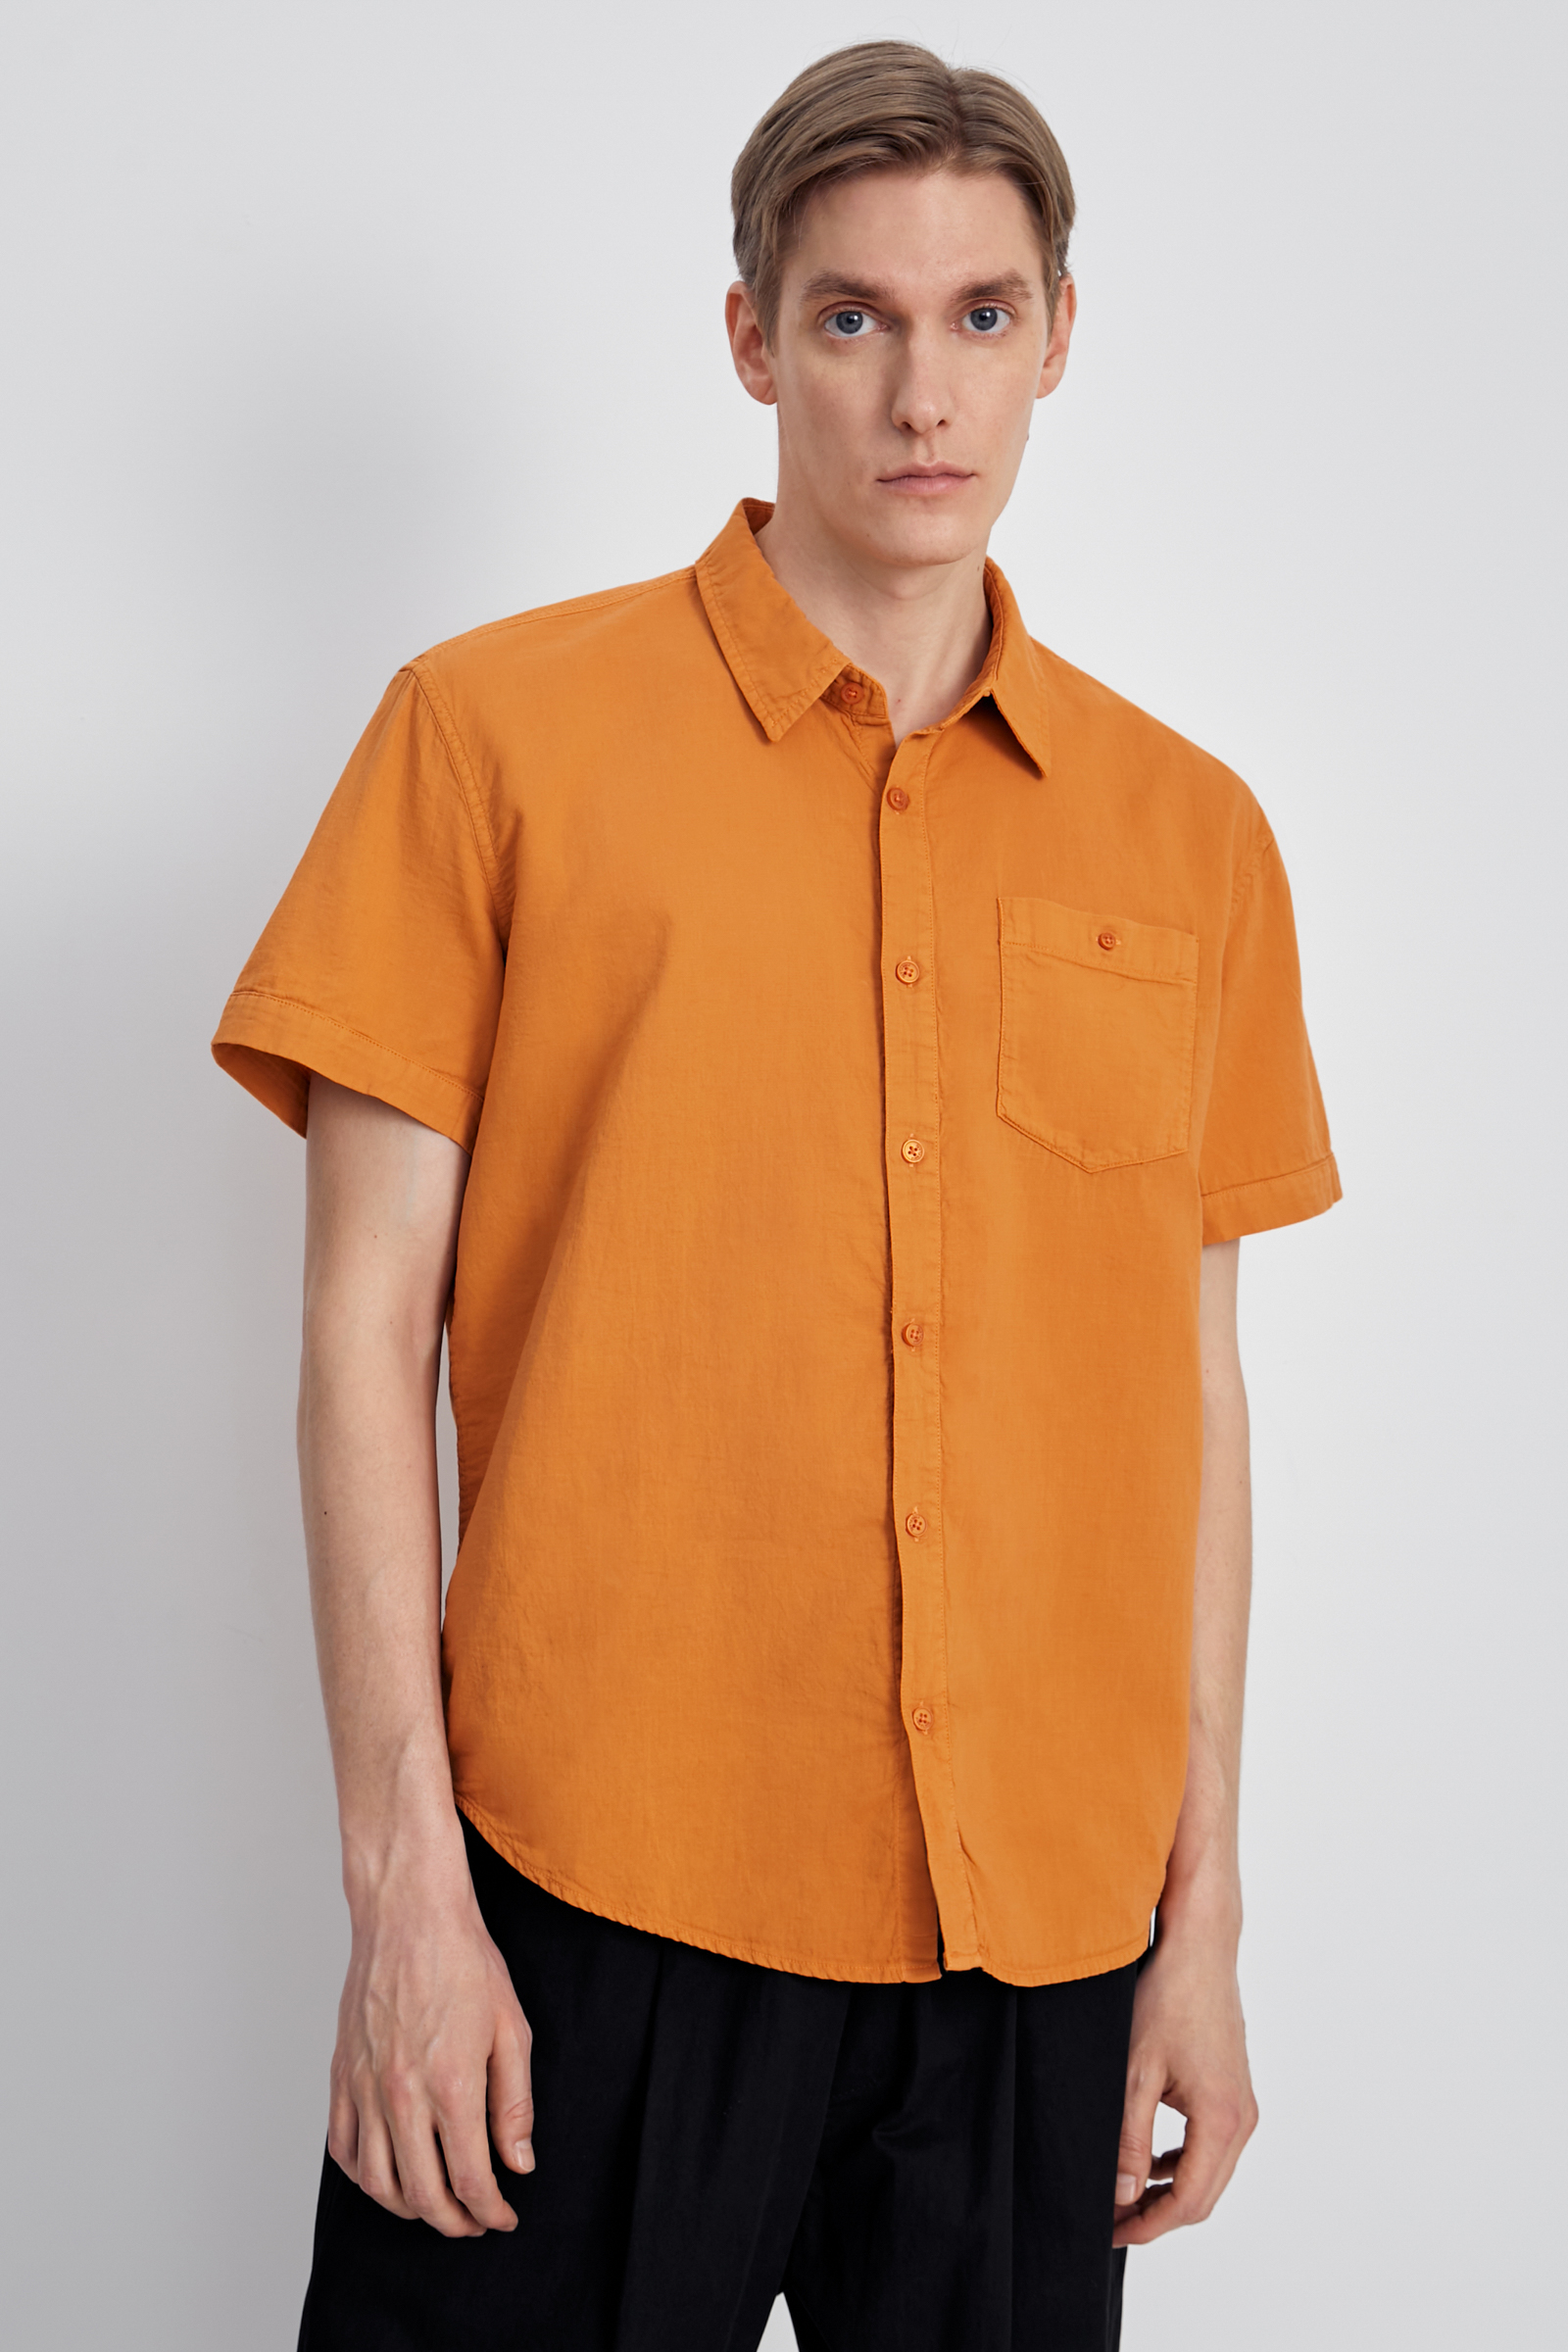 Рубашка мужская Finn Flare FSC21027 оранжевая M